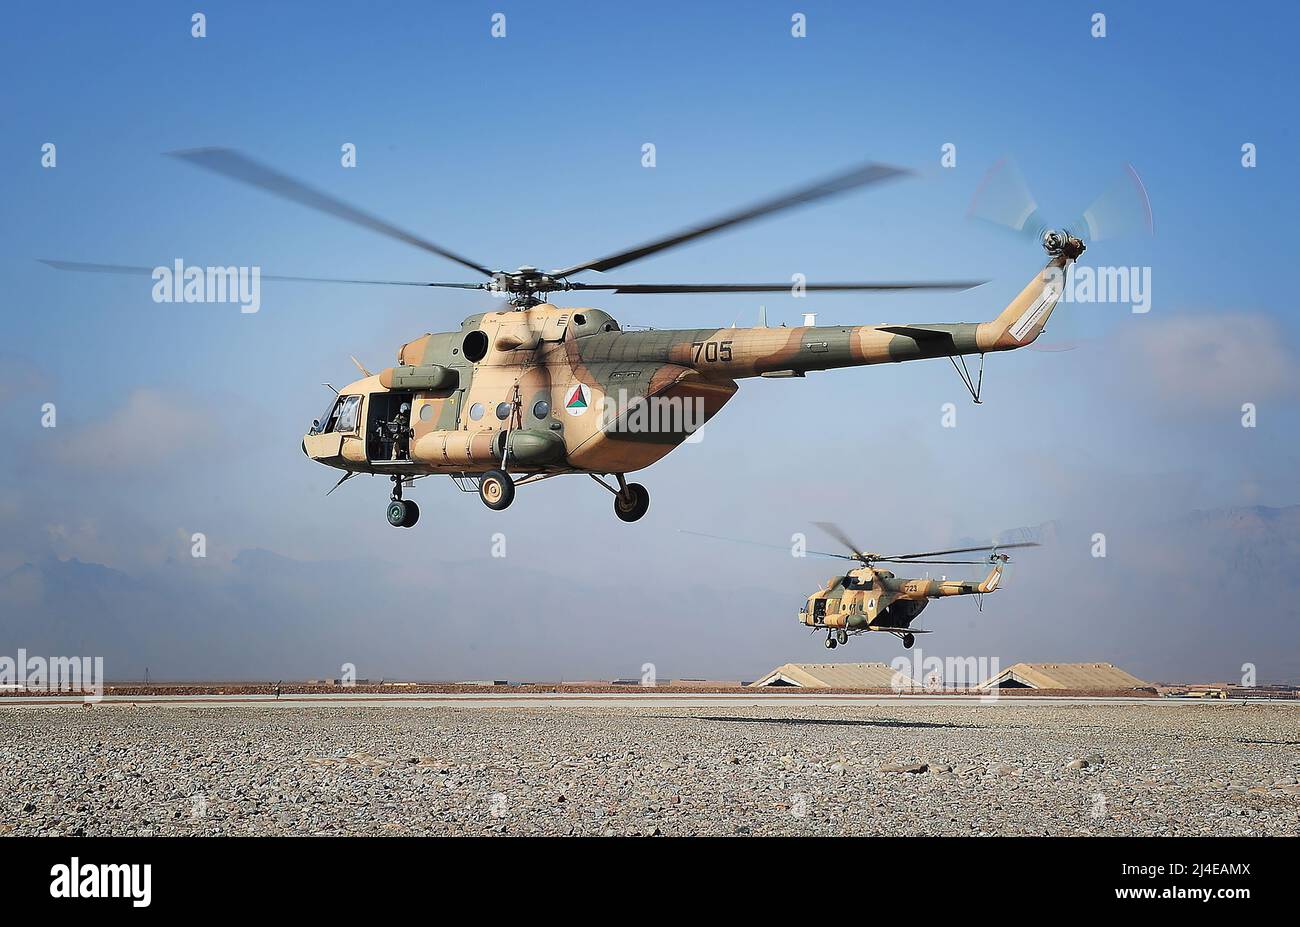 Mi-17-Hubschrauber, die vom 2.-Flügel der Luftwaffe der afghanischen Nationalarmee betrieben werden, starten am 23. Februar 2013 auf der multinationalen Basis Tarin Kowt in der Provinz Uruzgan in Afghanistan. (USA Armeefoto/veröffentlicht) die Mil Mi-17 (NATO-Berichtsname: Hip) ist eine russische Militärhubschrauberfamilie im sowjetischen Design, die 1975 eingeführt wurde (Mi-8M) und seit 2021 in zwei Fabriken in Kasan und Ulan-Ude produziert wird. Im russischen Dienst ist sie als Mi-8M-Serie bekannt. Stockfoto